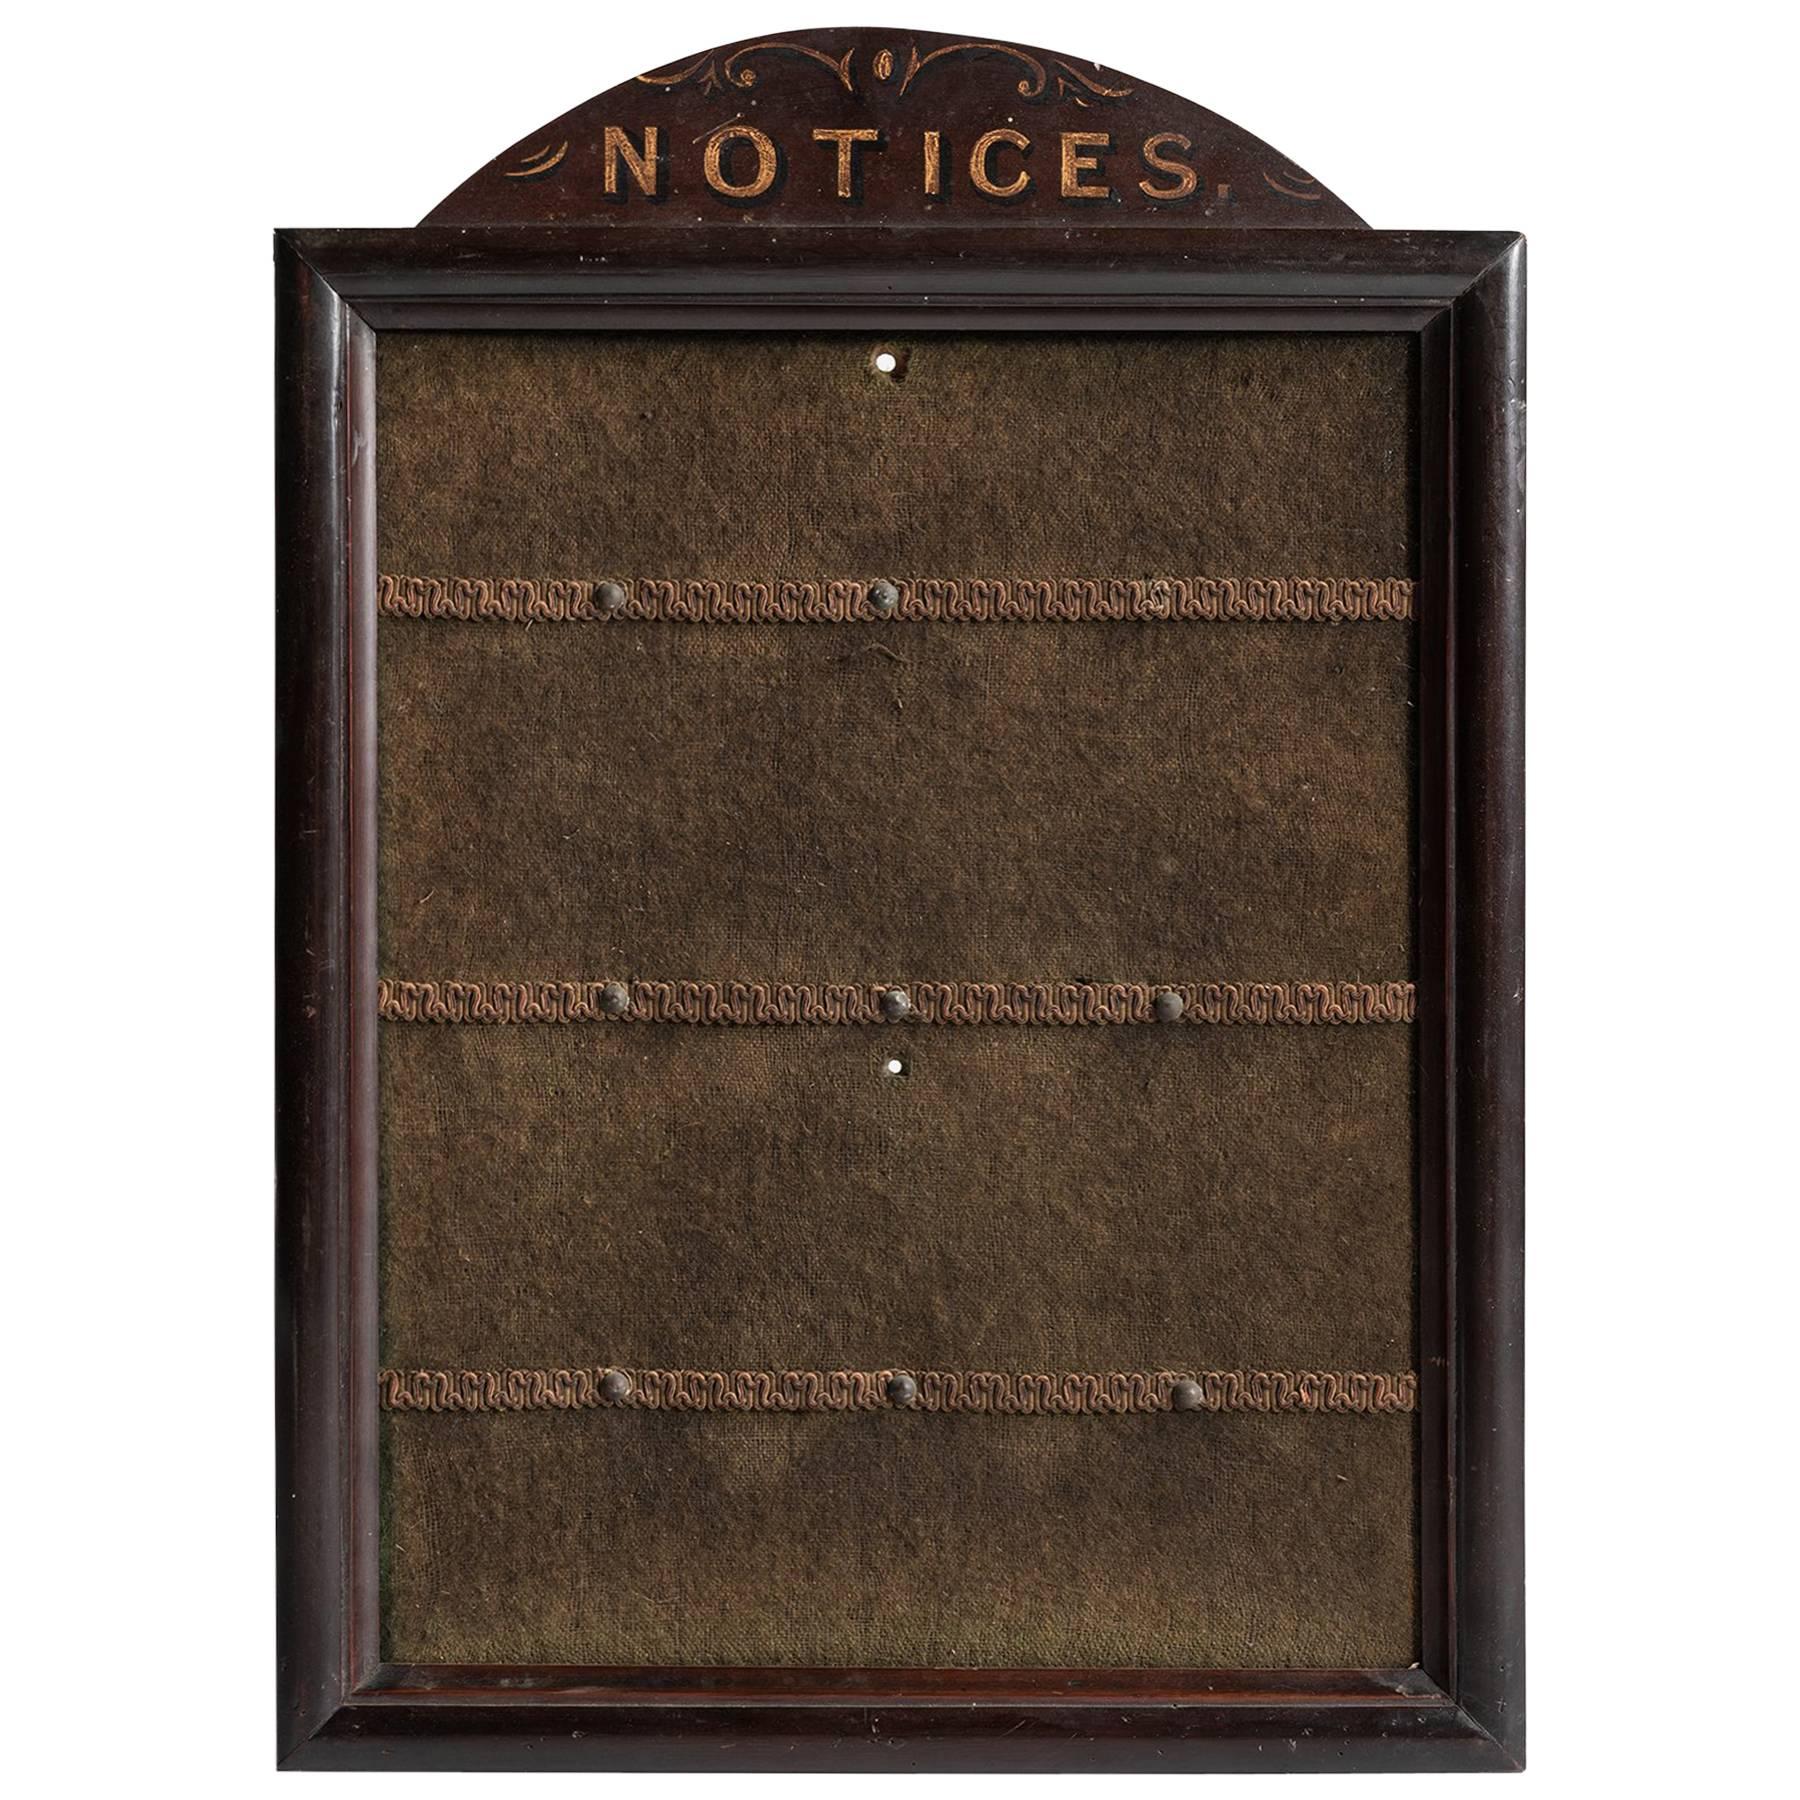 Notice Board, circa 1900